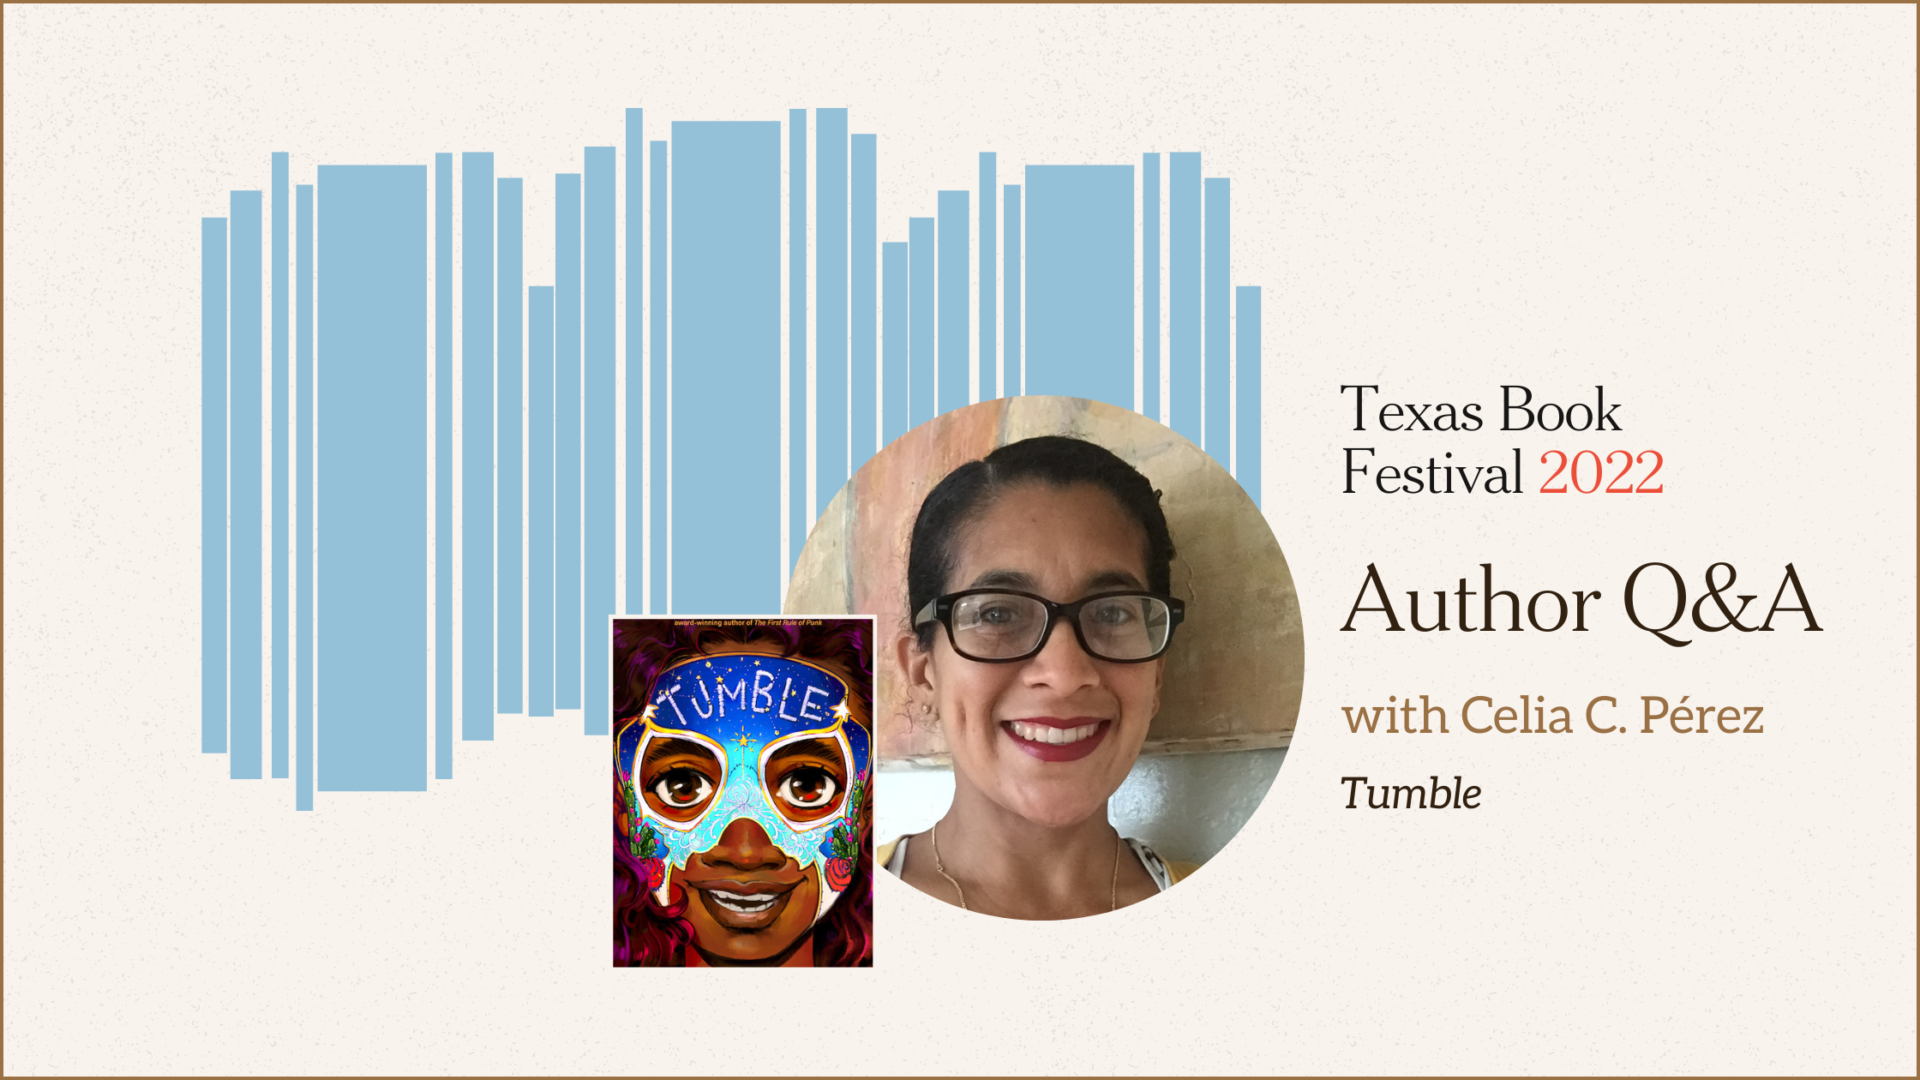 TBF Author Q&A with Celia C. Pérez